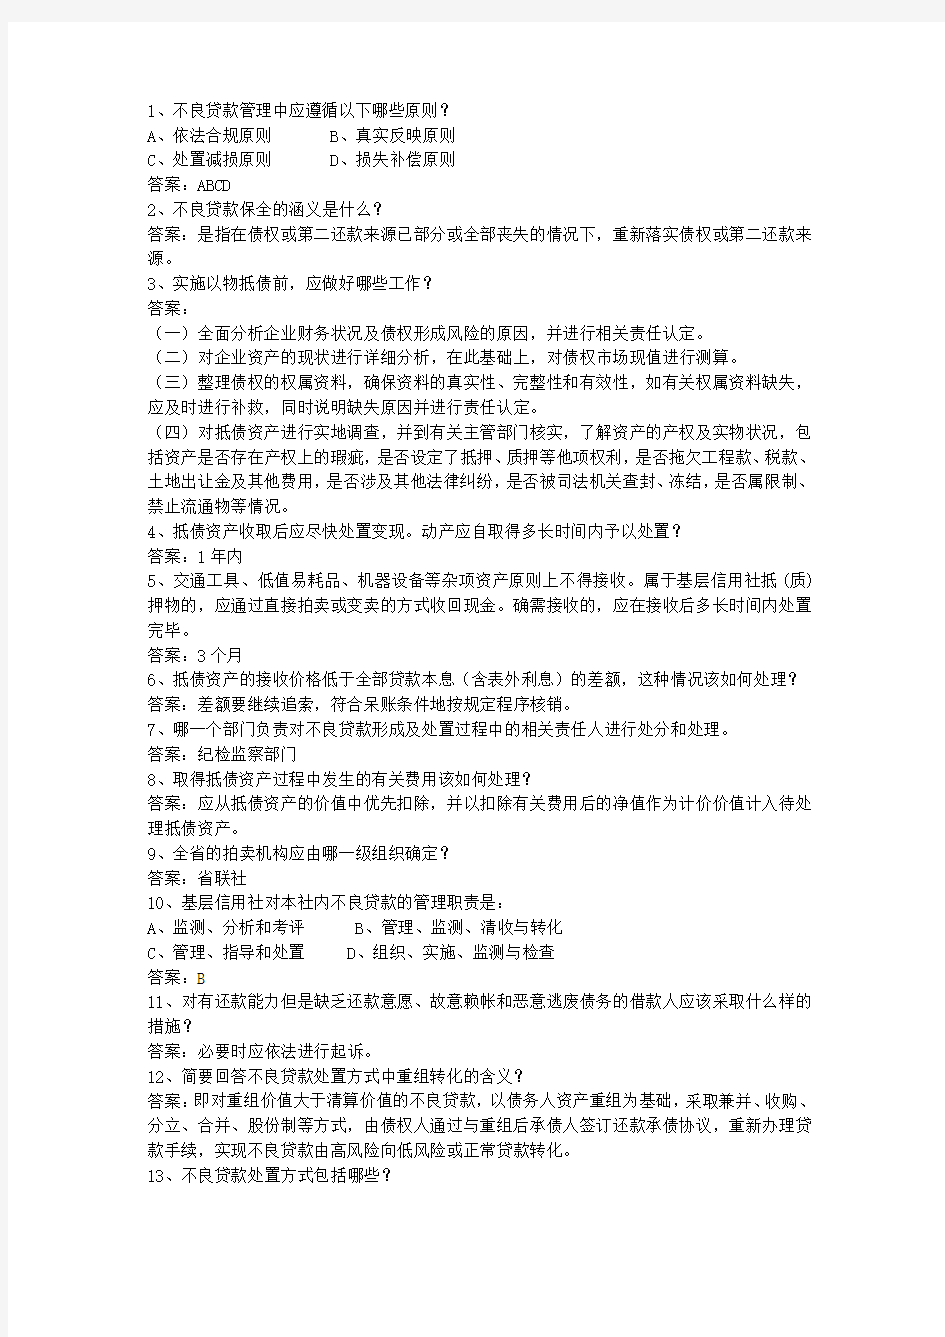 2015江苏省农村信用社考试试题财会考试技巧、答题原则